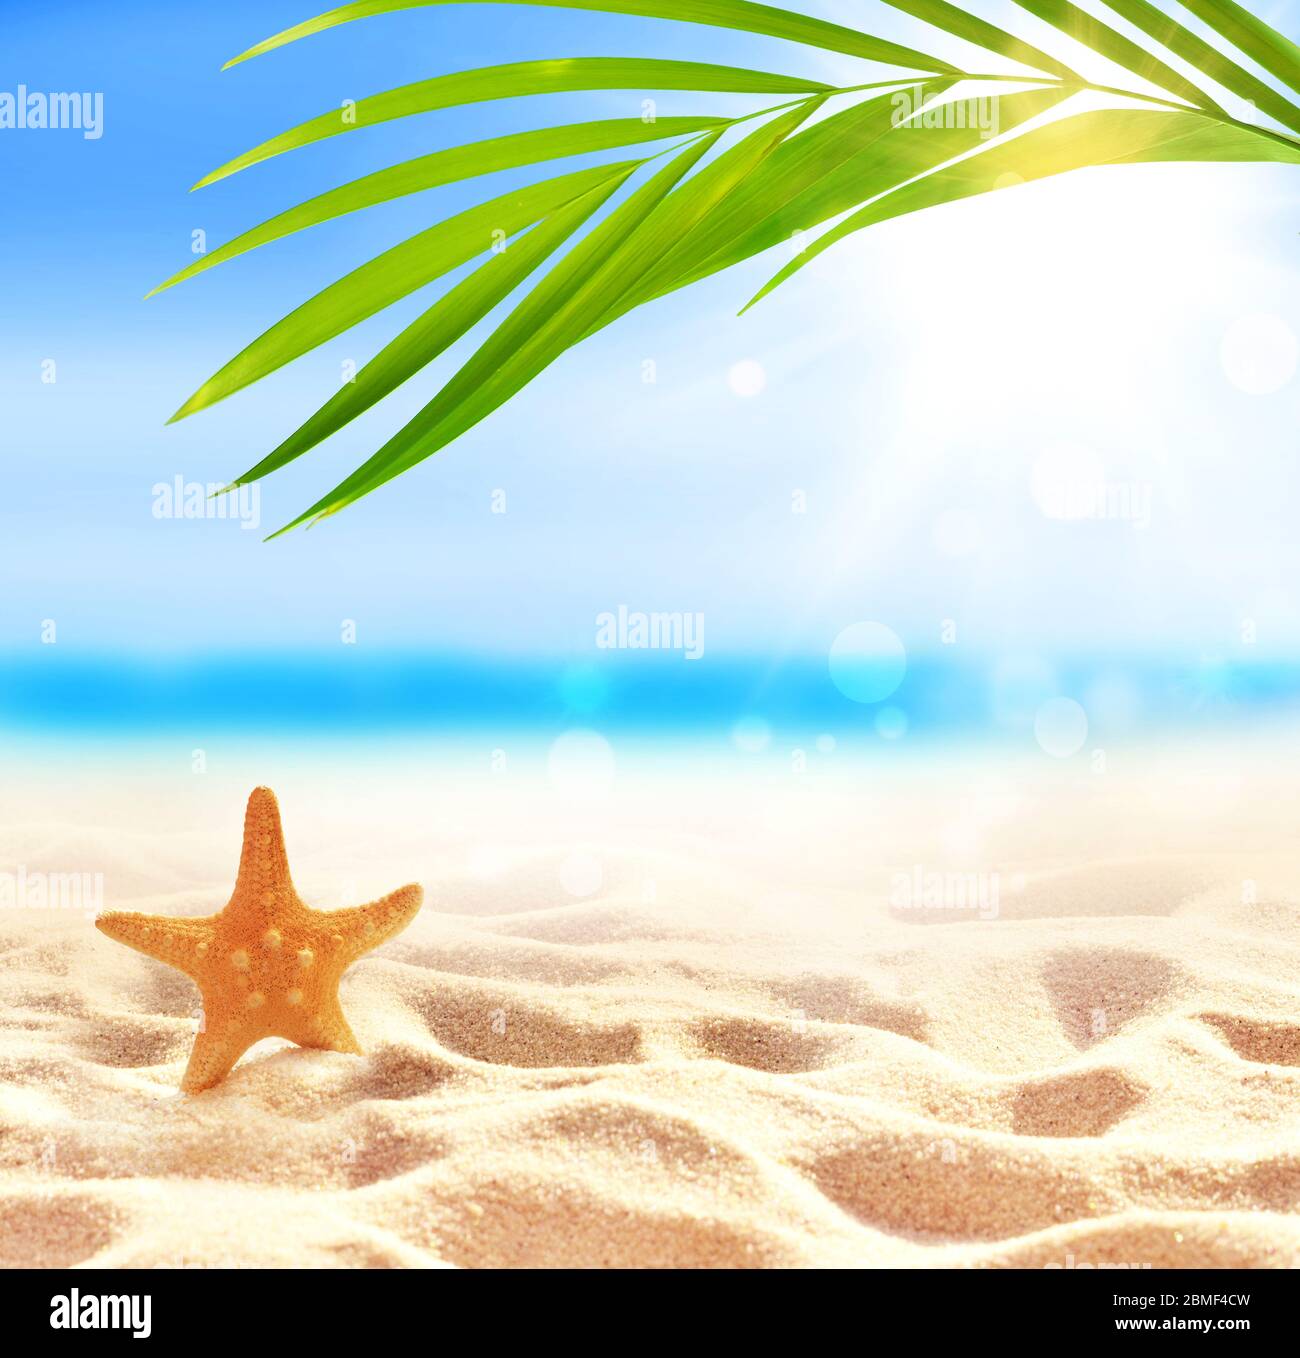 Spiaggia estiva con stelle marine in sabbia bianca e foglie di palma tropicale. Foto Stock